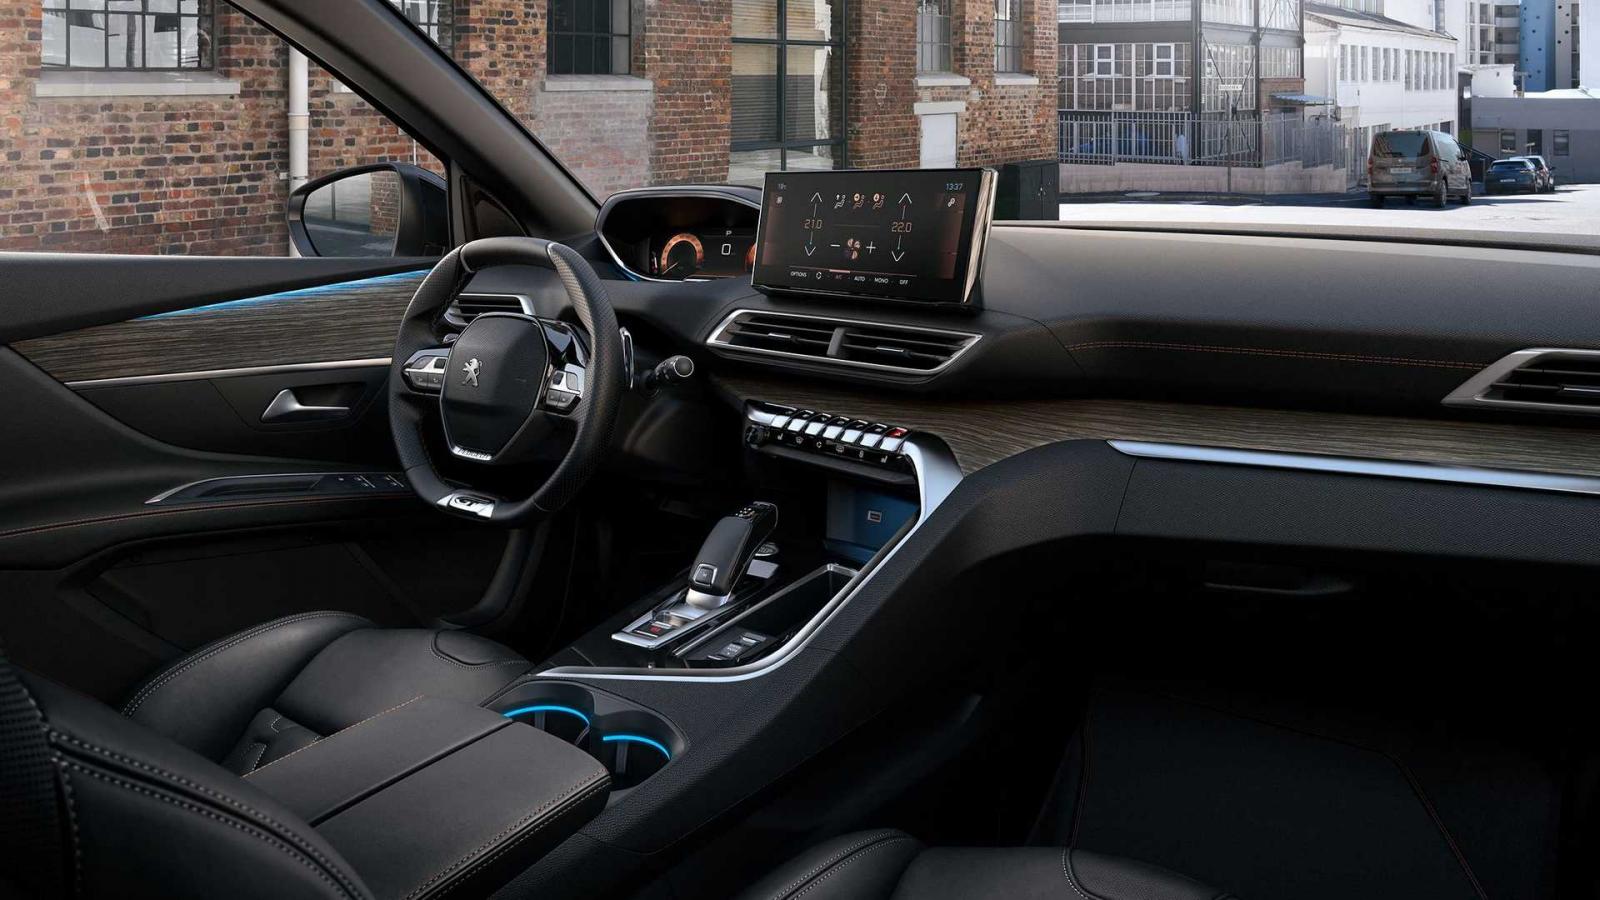 Peugeot 5008 2021 facelift ứng dụng công nghệ tân tiến tột đỉnh.